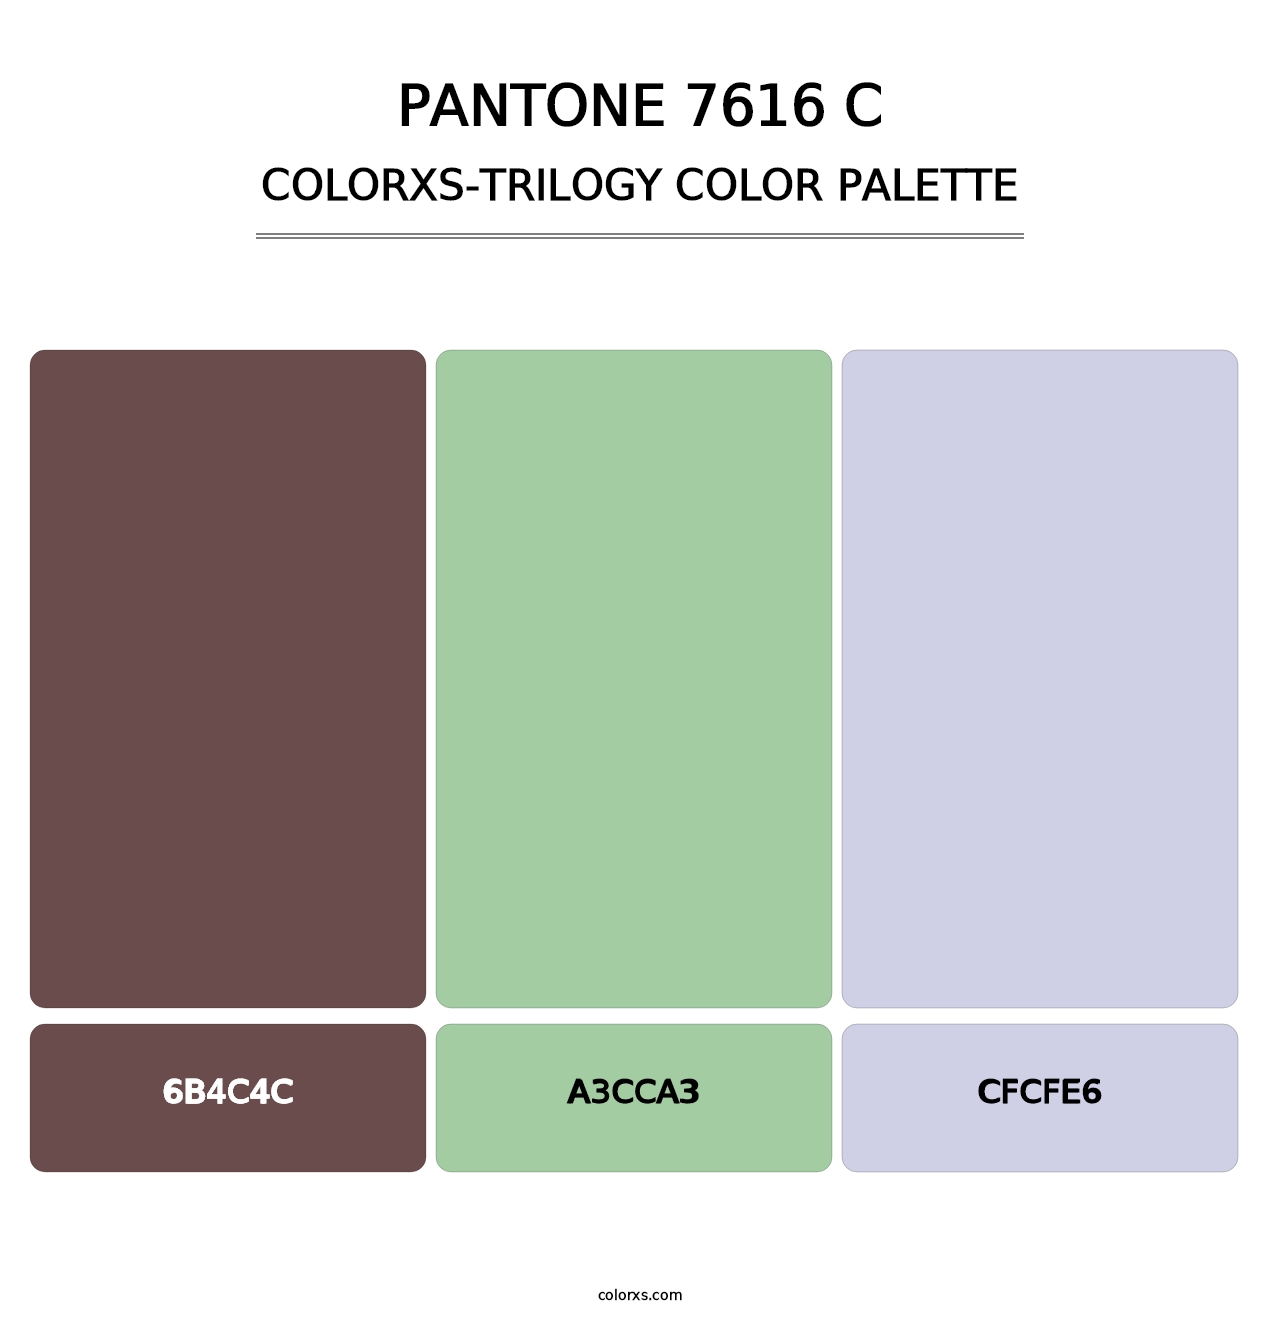 PANTONE 7616 C - Colorxs Trilogy Palette